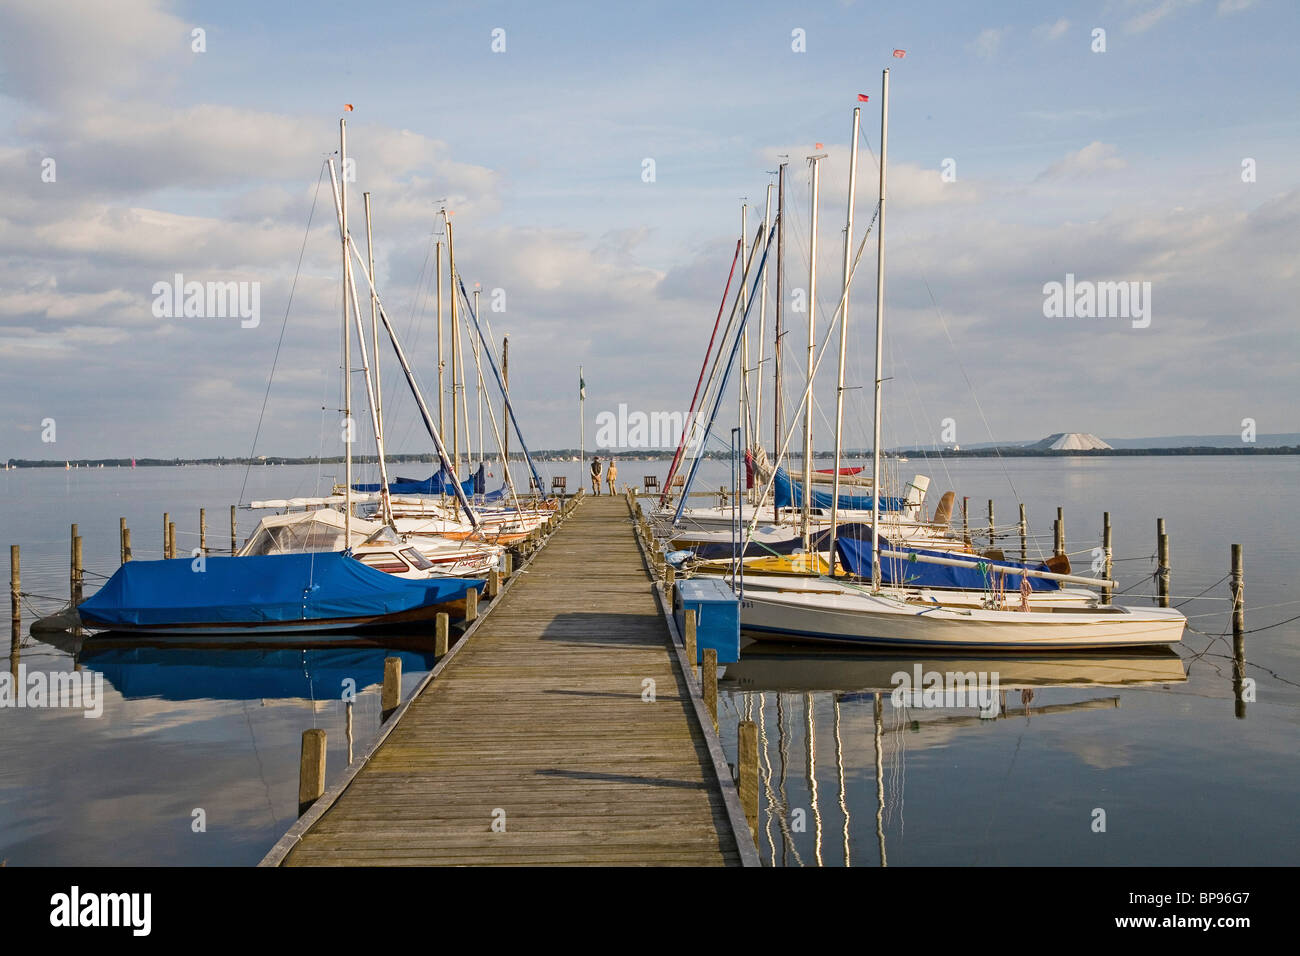 Yachts amarrés, lac Steinhuder réflexions, Basse-Saxe, Allemagne Banque D'Images